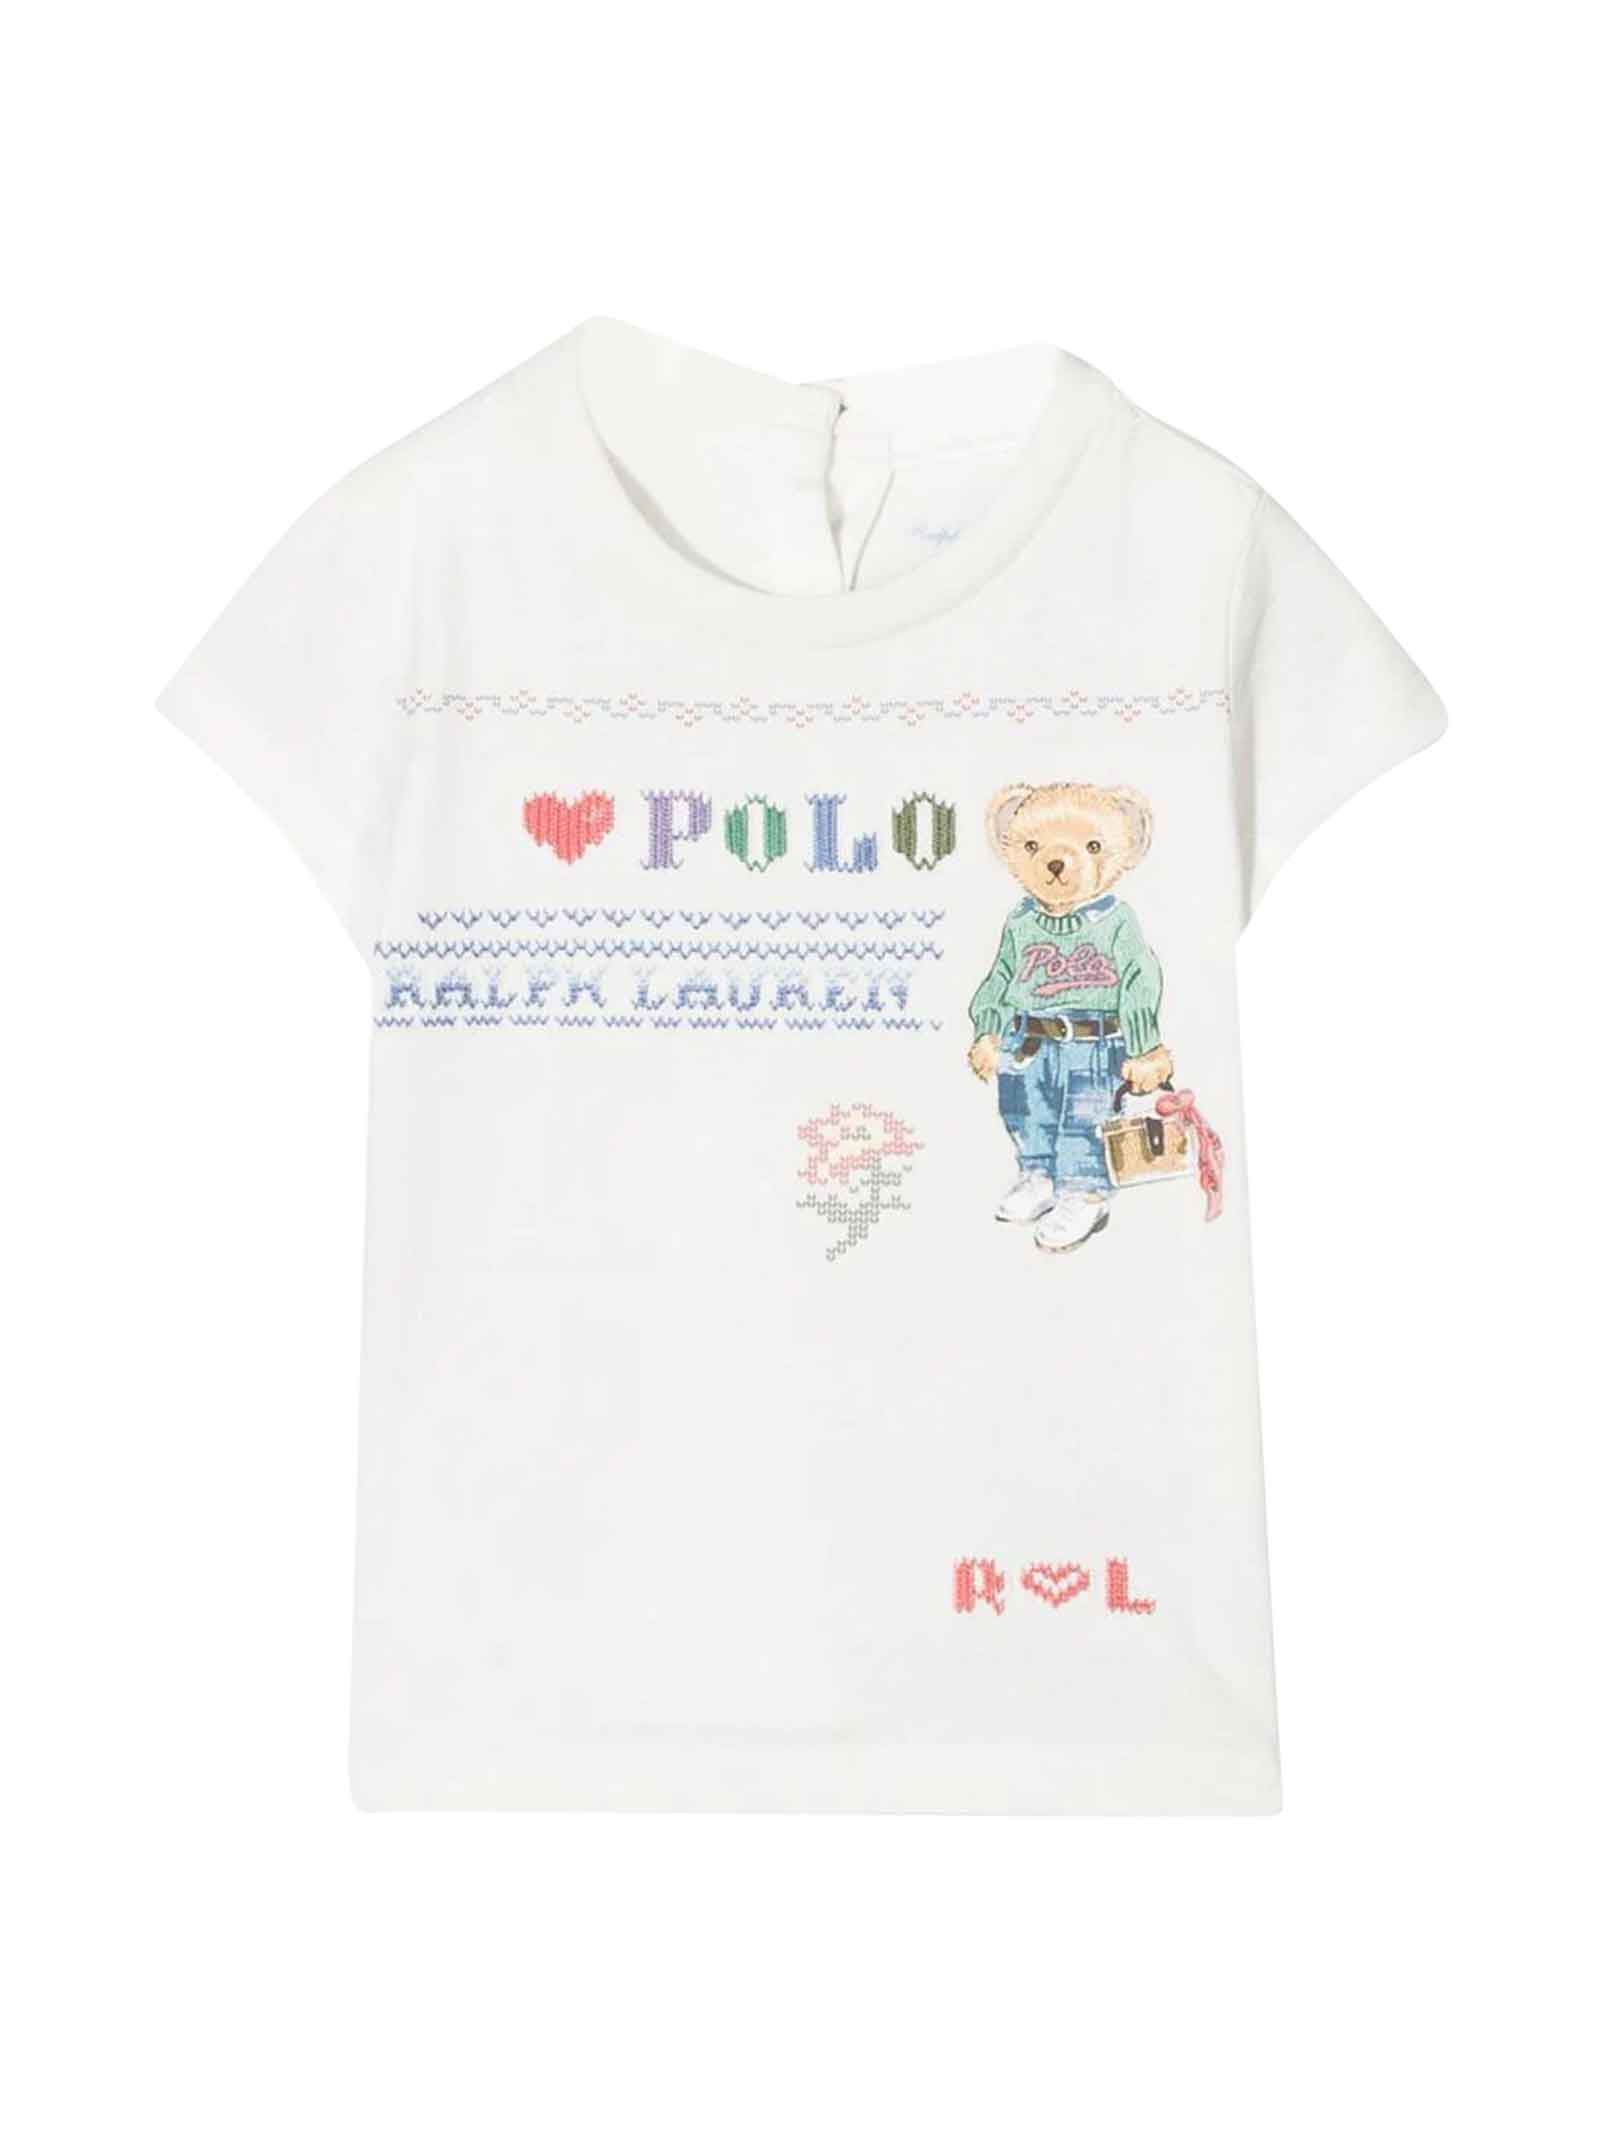 Ralph Lauren White T-shirt Baby Girl, Mini Rodini